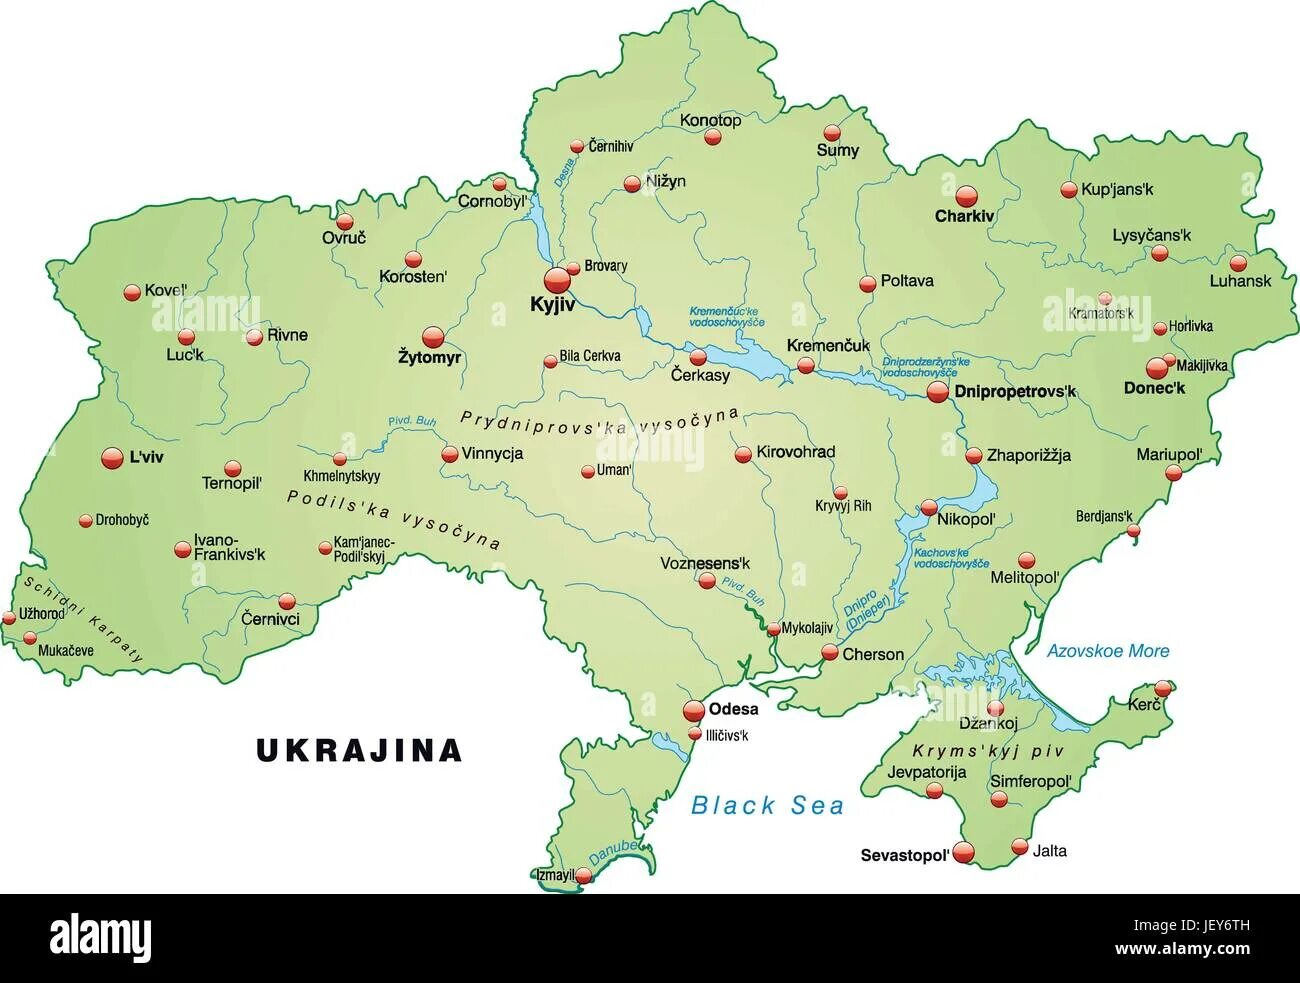 Город сумы на карте. Конотоп на карте Украины. Карта Украины Буча на карте Украины. Сумы Украина на карте. Г Сумы на карте Украины.